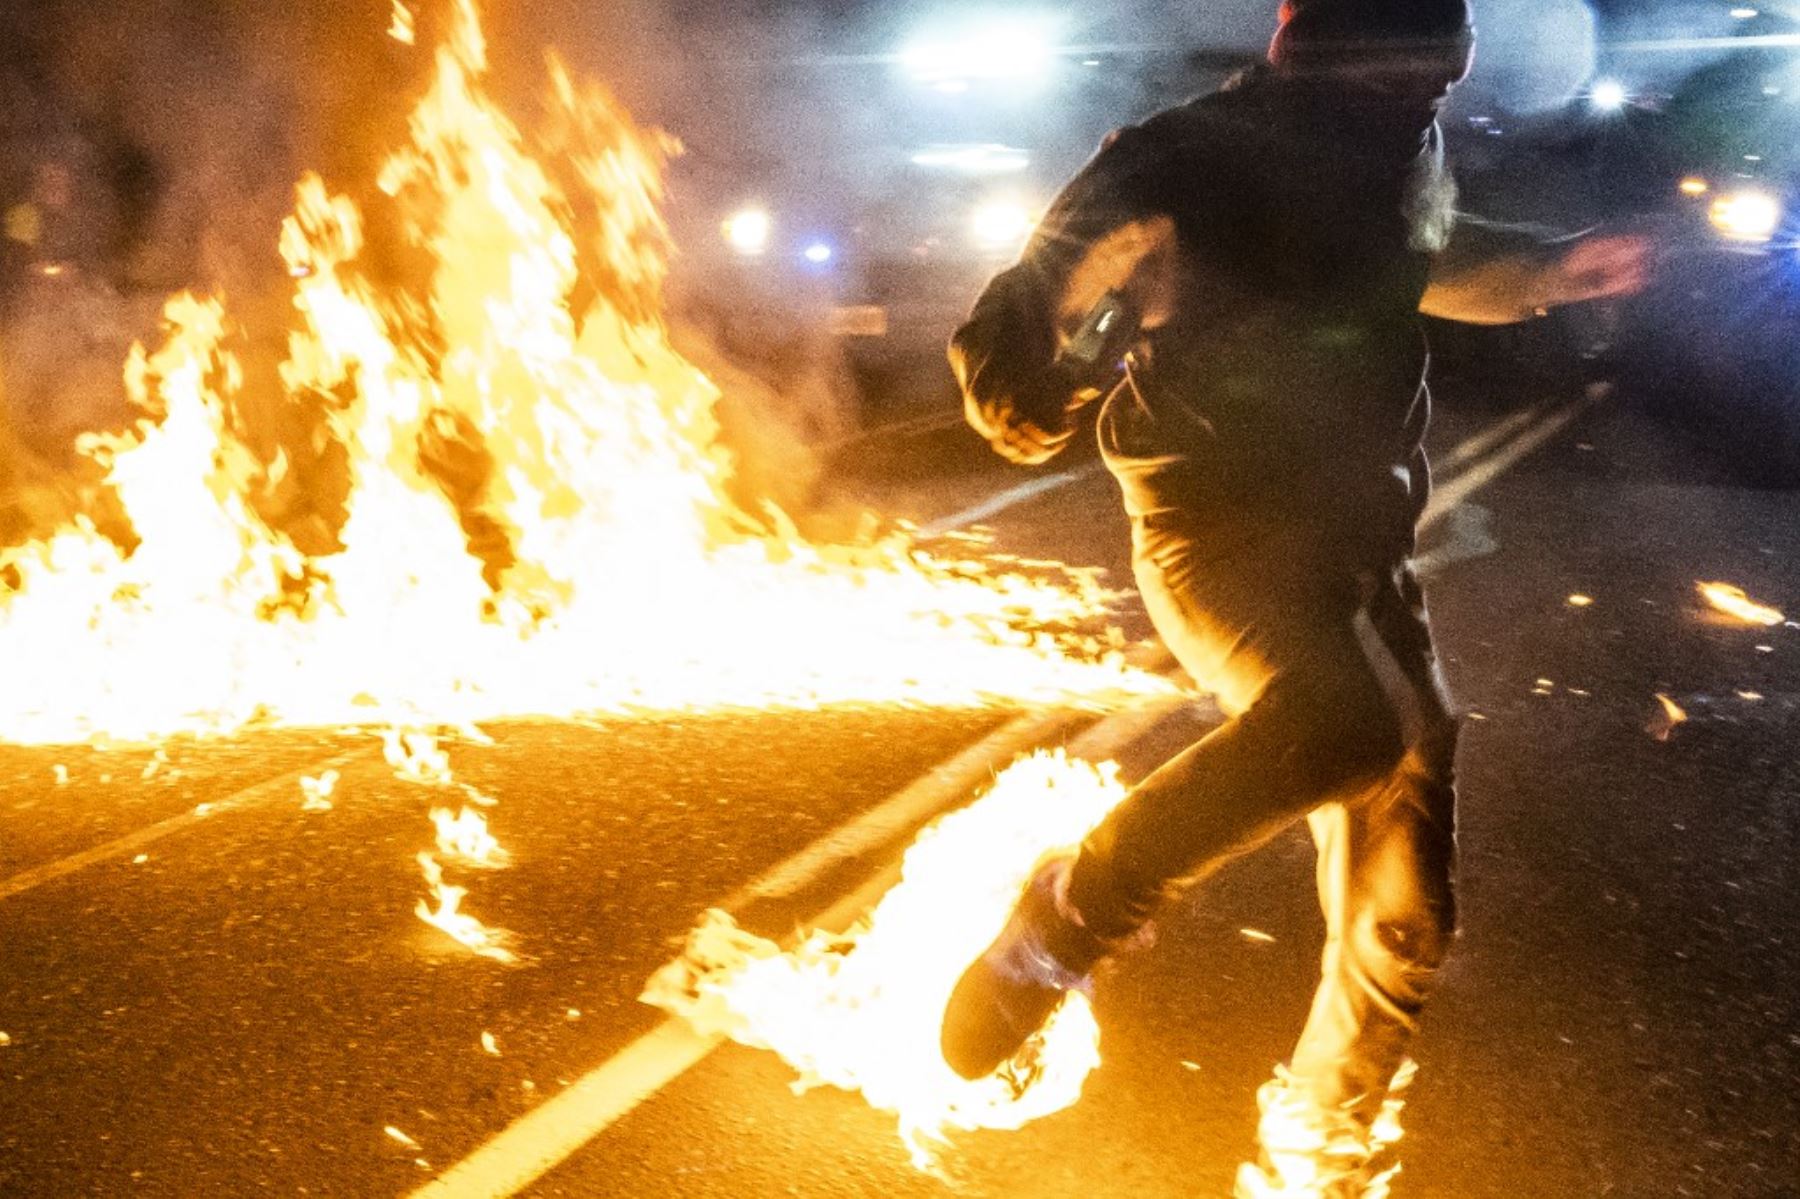 Un manifestante, cuyos pies se incendiaron después de que un cóctel molotov explotó sobre él, corre hacia un médico durante una protesta contra la brutalidad policial y la injusticia racial en Portland, Oregon. Foto: AFP